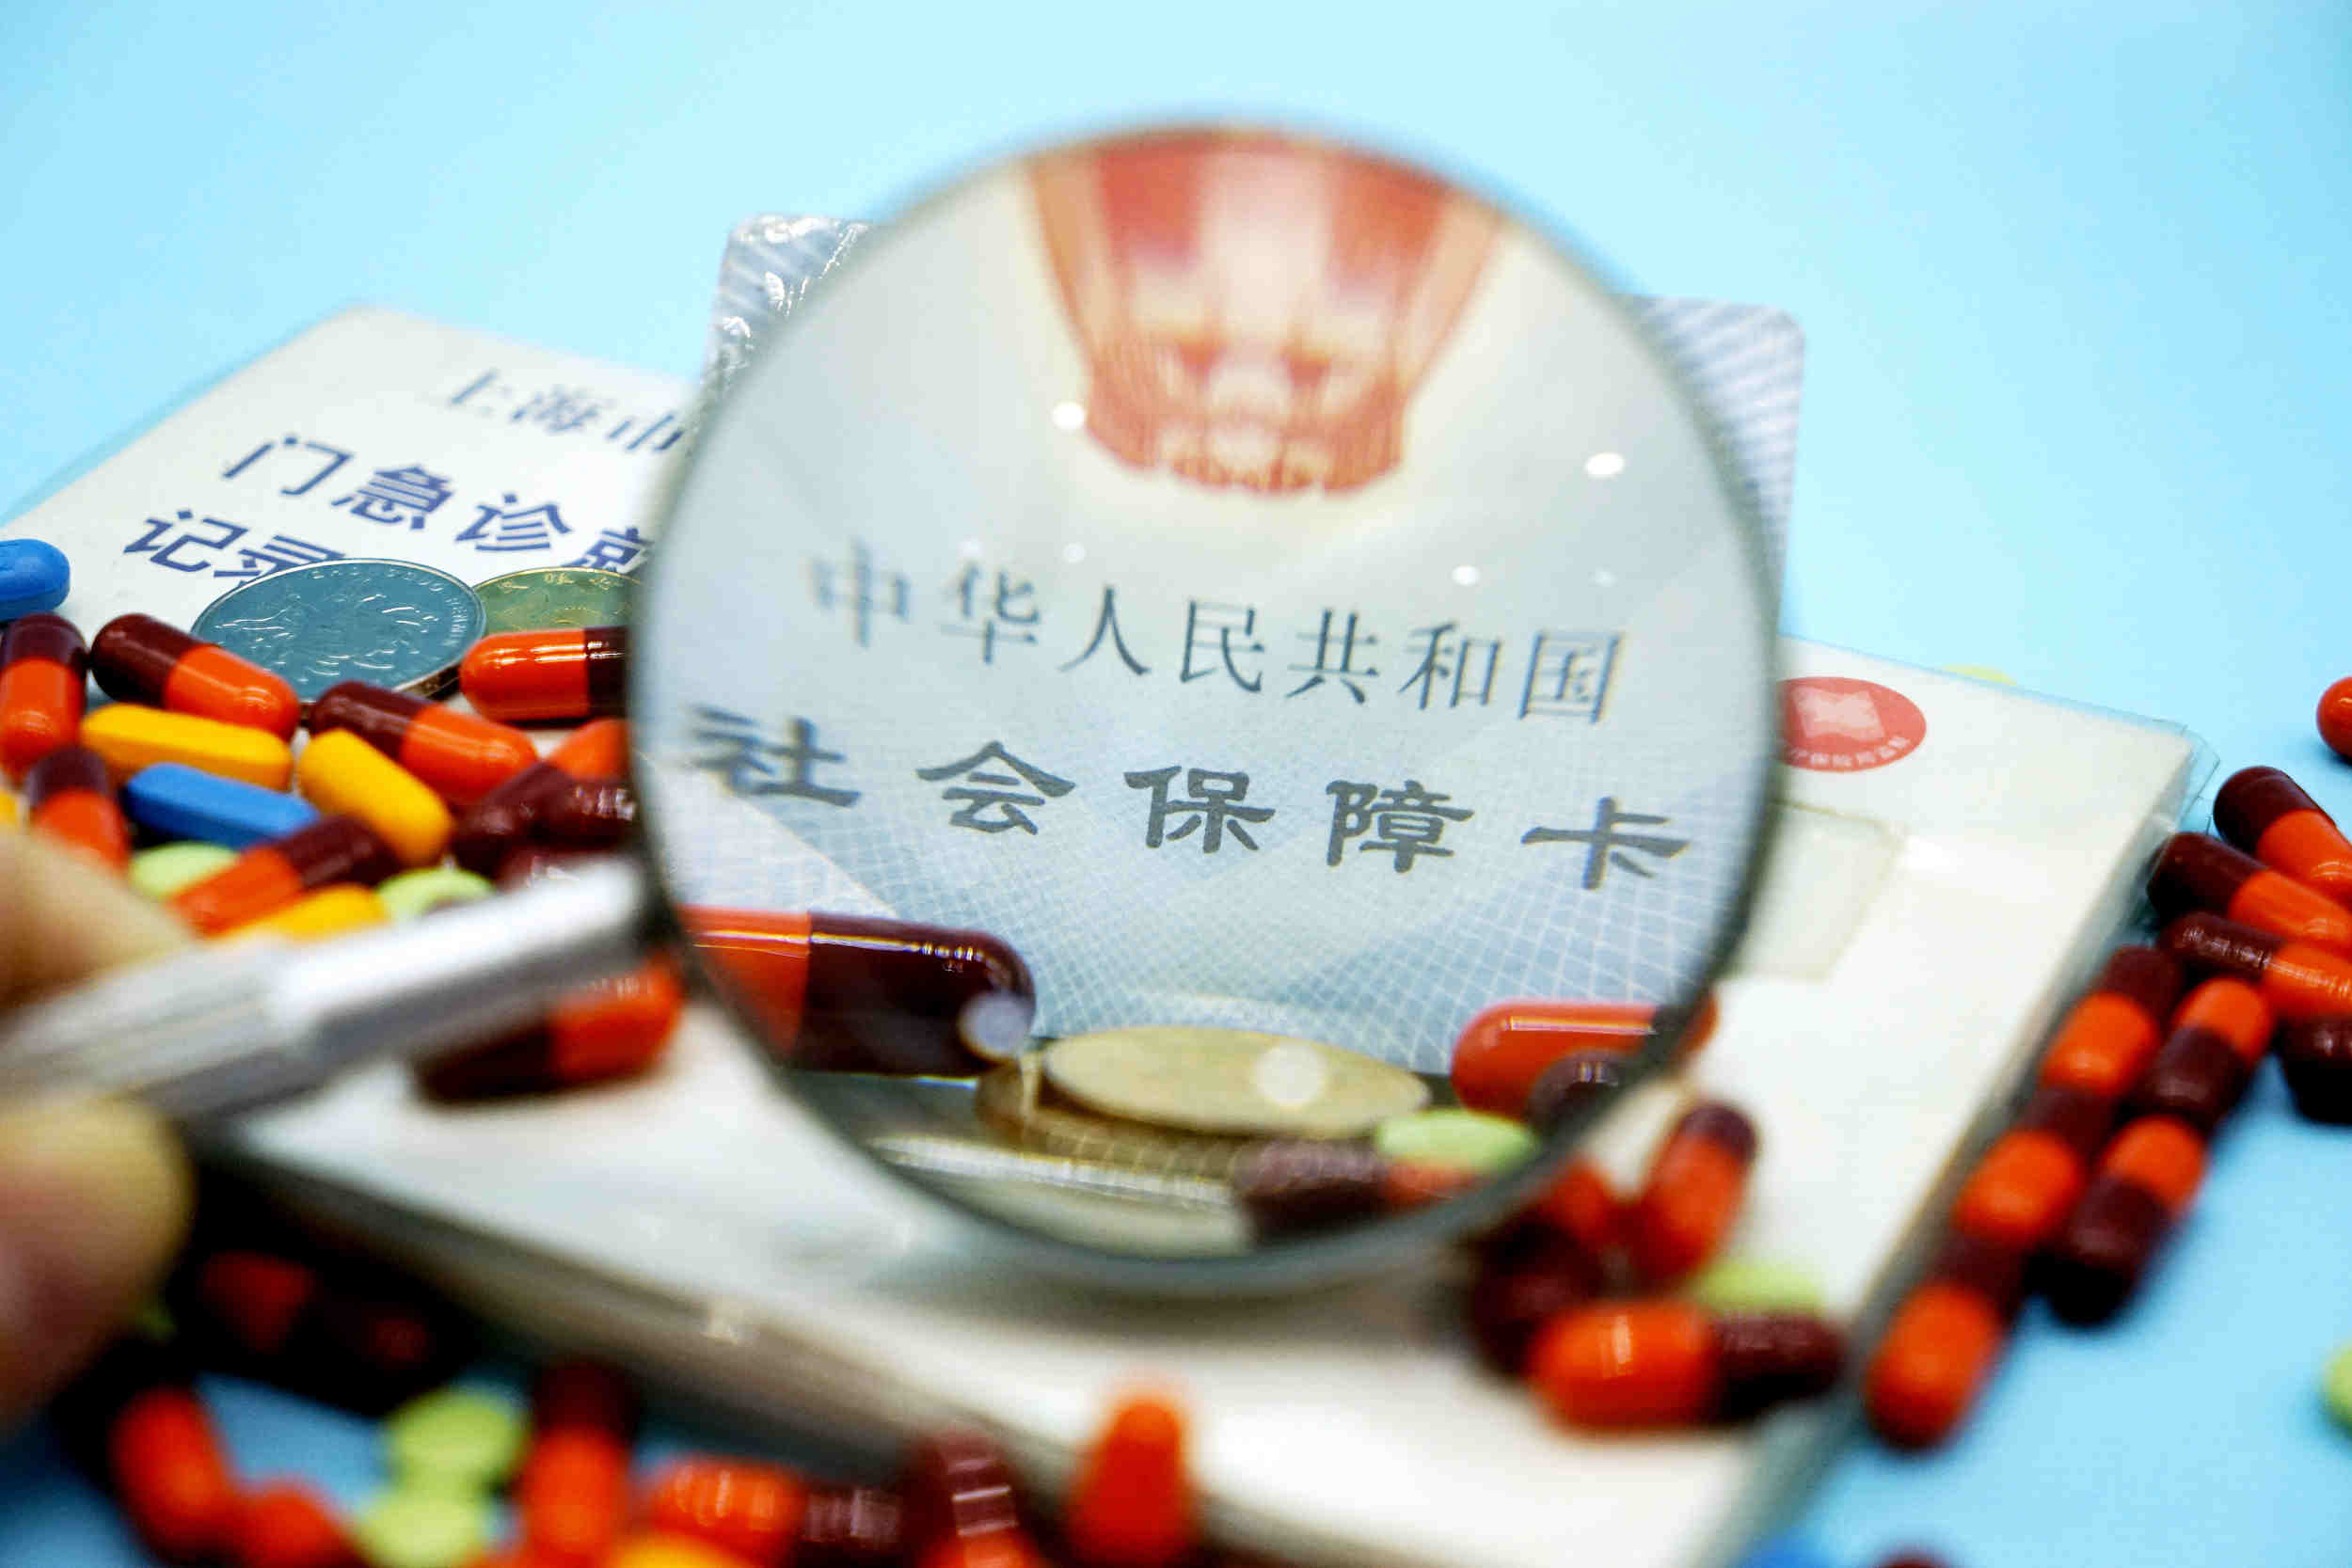 中国胰岛素集采落地 “质优价宜” 药物造福大量糖尿病患者